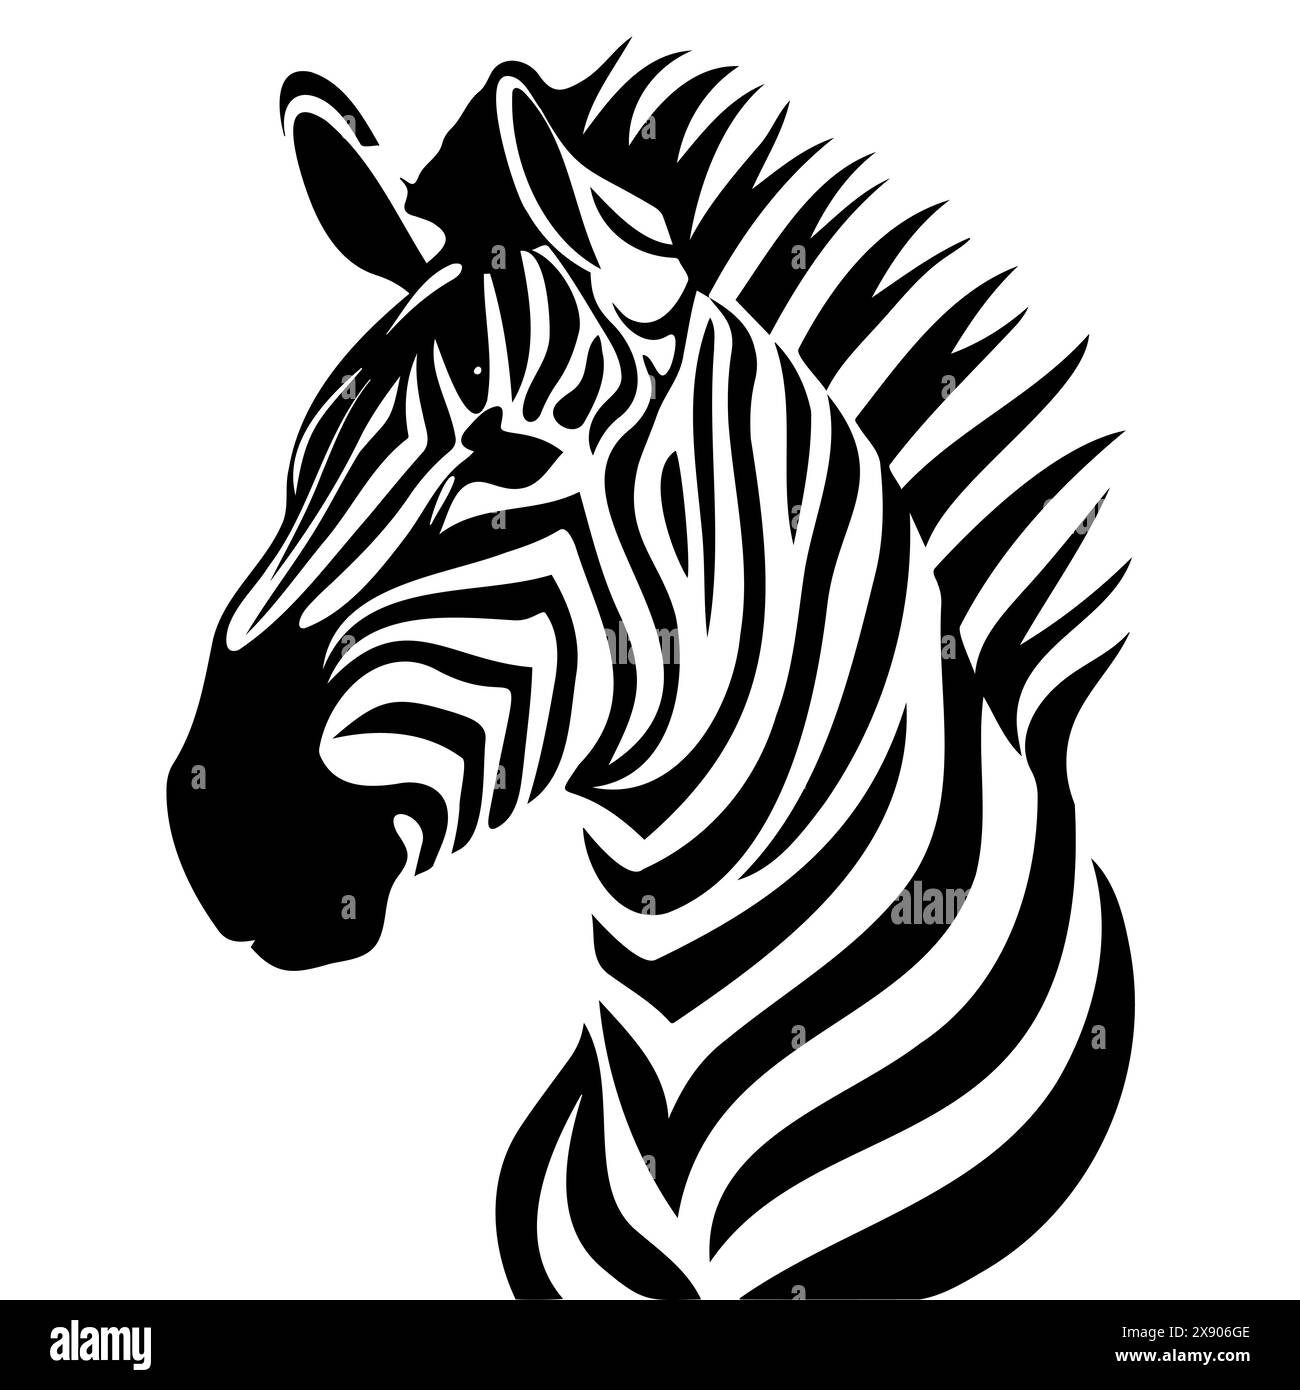 Eine detaillierte Schwarzweiß-Illustration, die den Kopf eines Zebras darstellt Stock Vektor